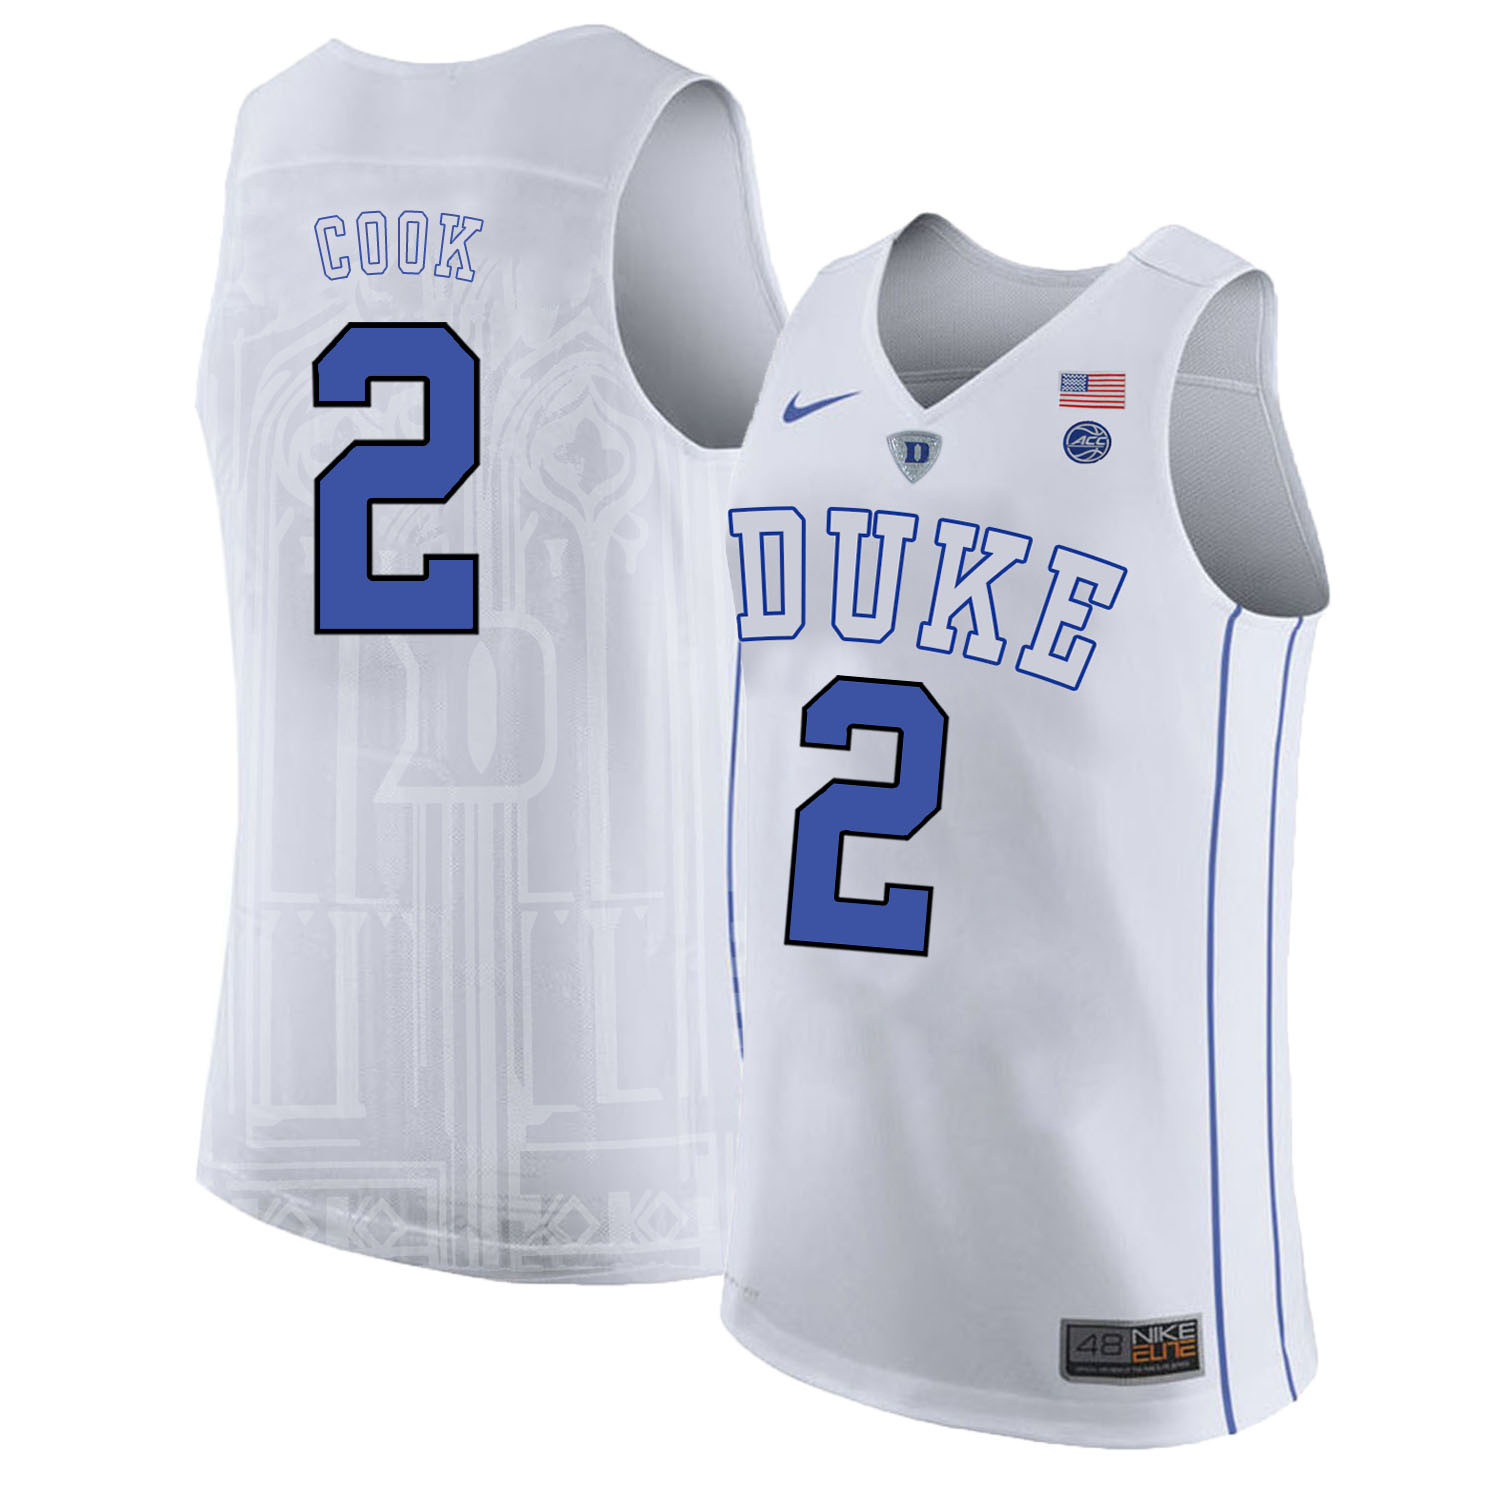 Duke Blue Devils 2 Quinn Cook White Nike College Basketball Jersey